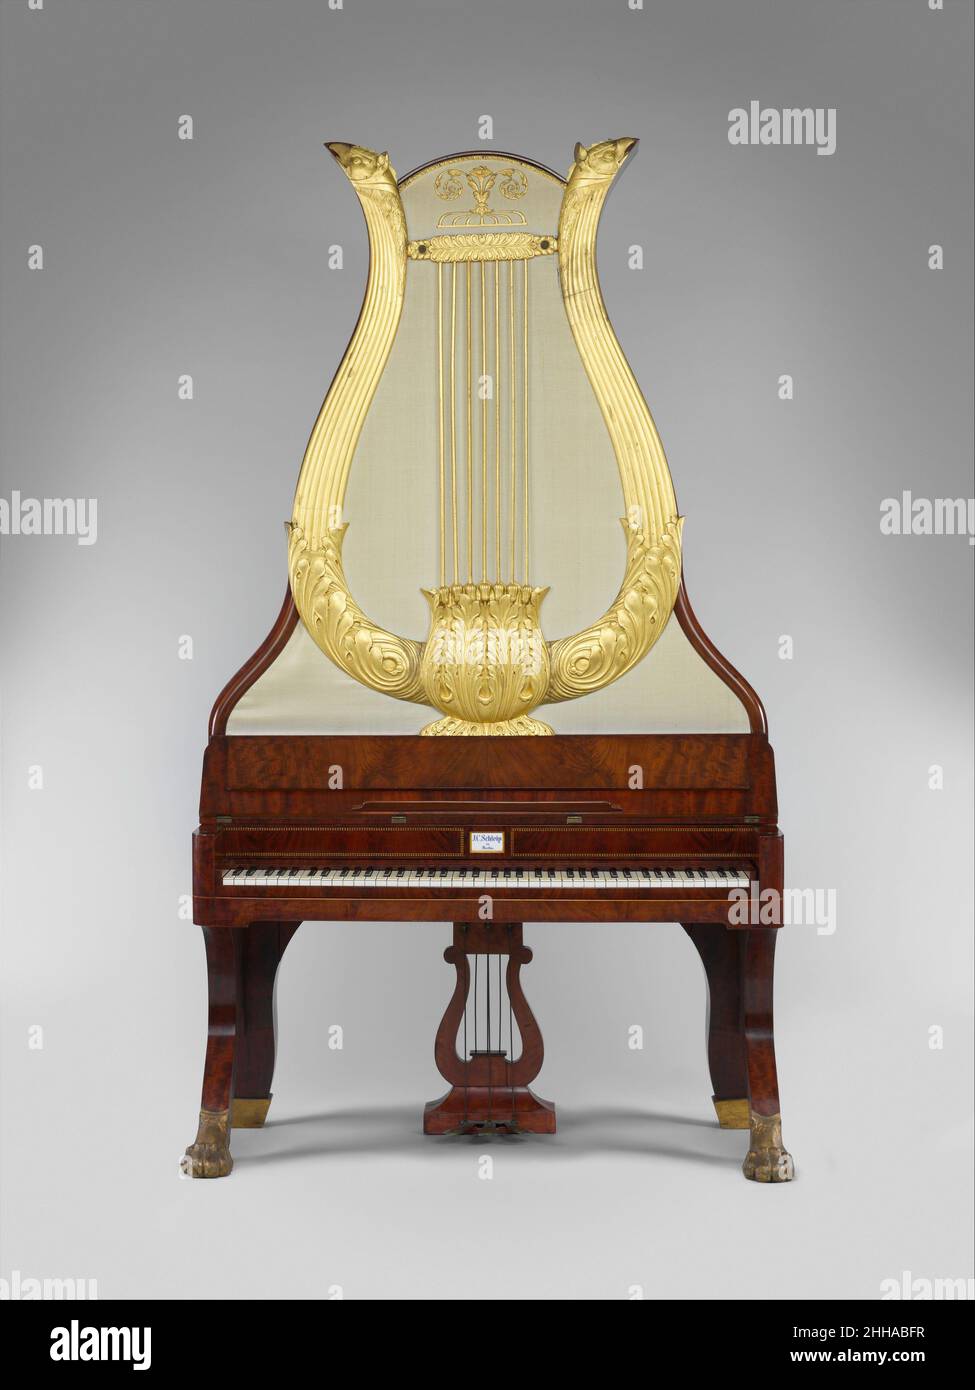 Lyraflügel ca. 1820–44 Johann Christian Schleip (1786–1848) questo tipo di  pianoforte verticale è stato realizzato quasi esclusivamente a Berlino tra  il 1820 e il 1850. Il Lyraflügel era un'attrezzatura alla moda dei